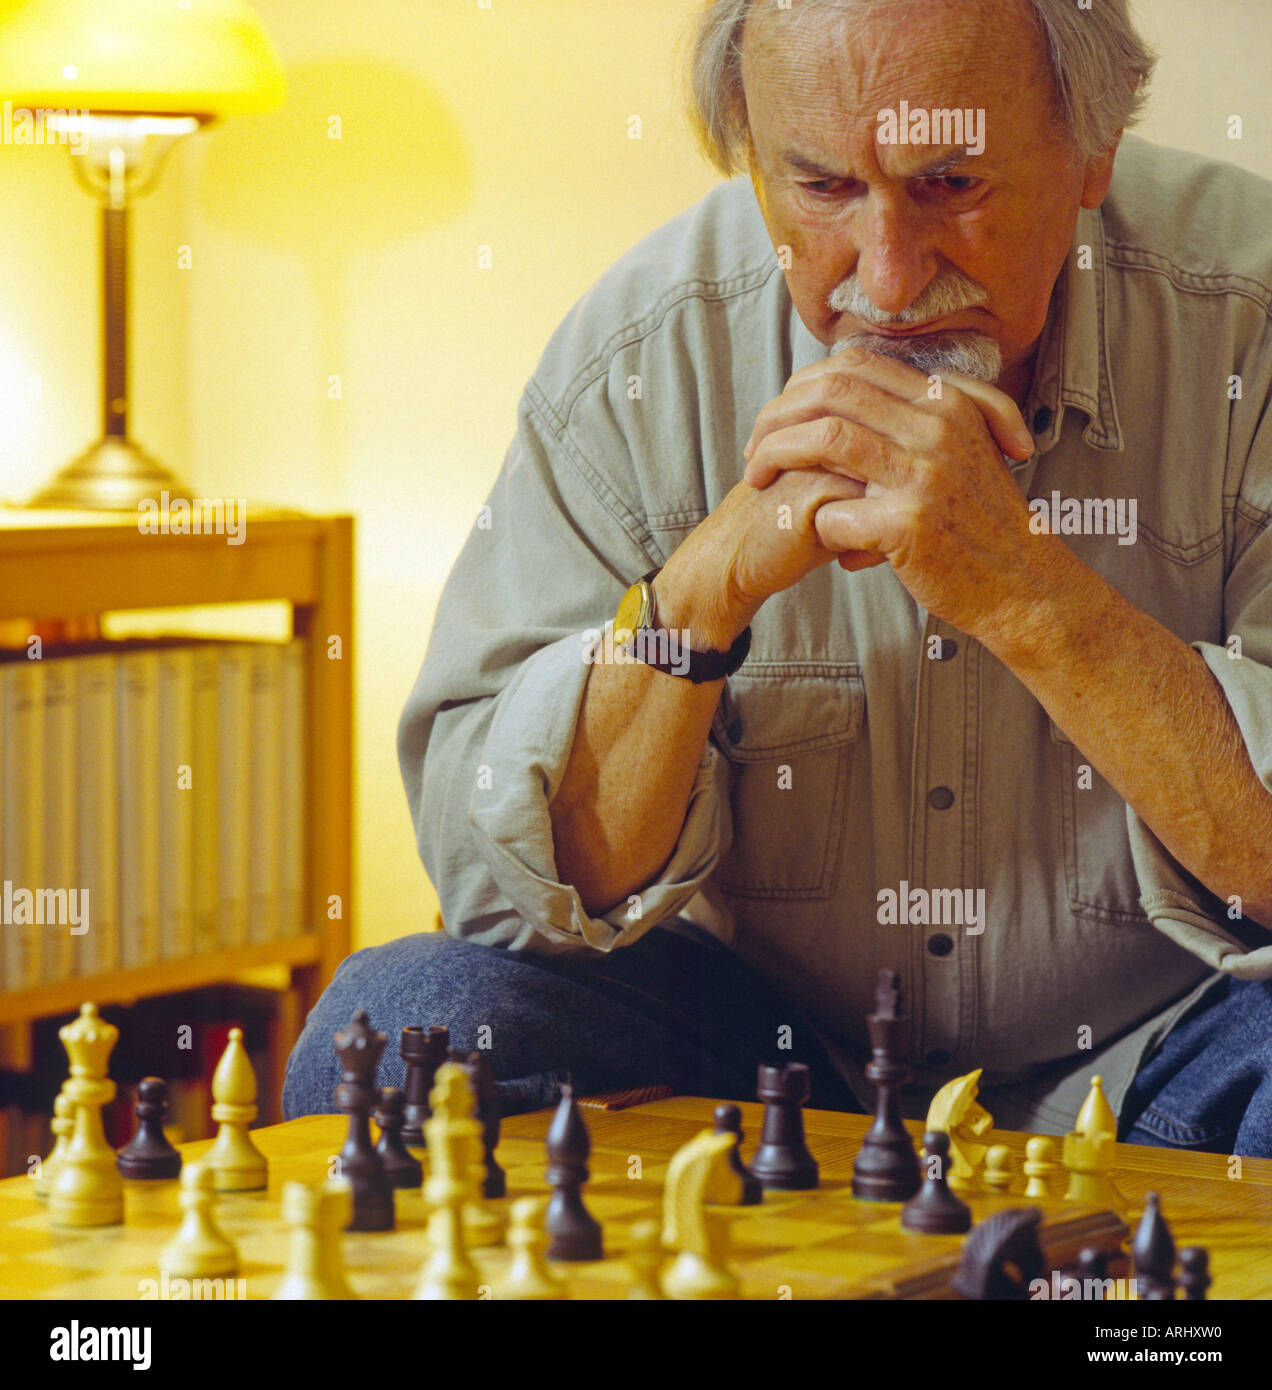 Vieil homme jouant aux échecs assis en face de la pensée en échiquier en raison de raisonnement Banque D'Images